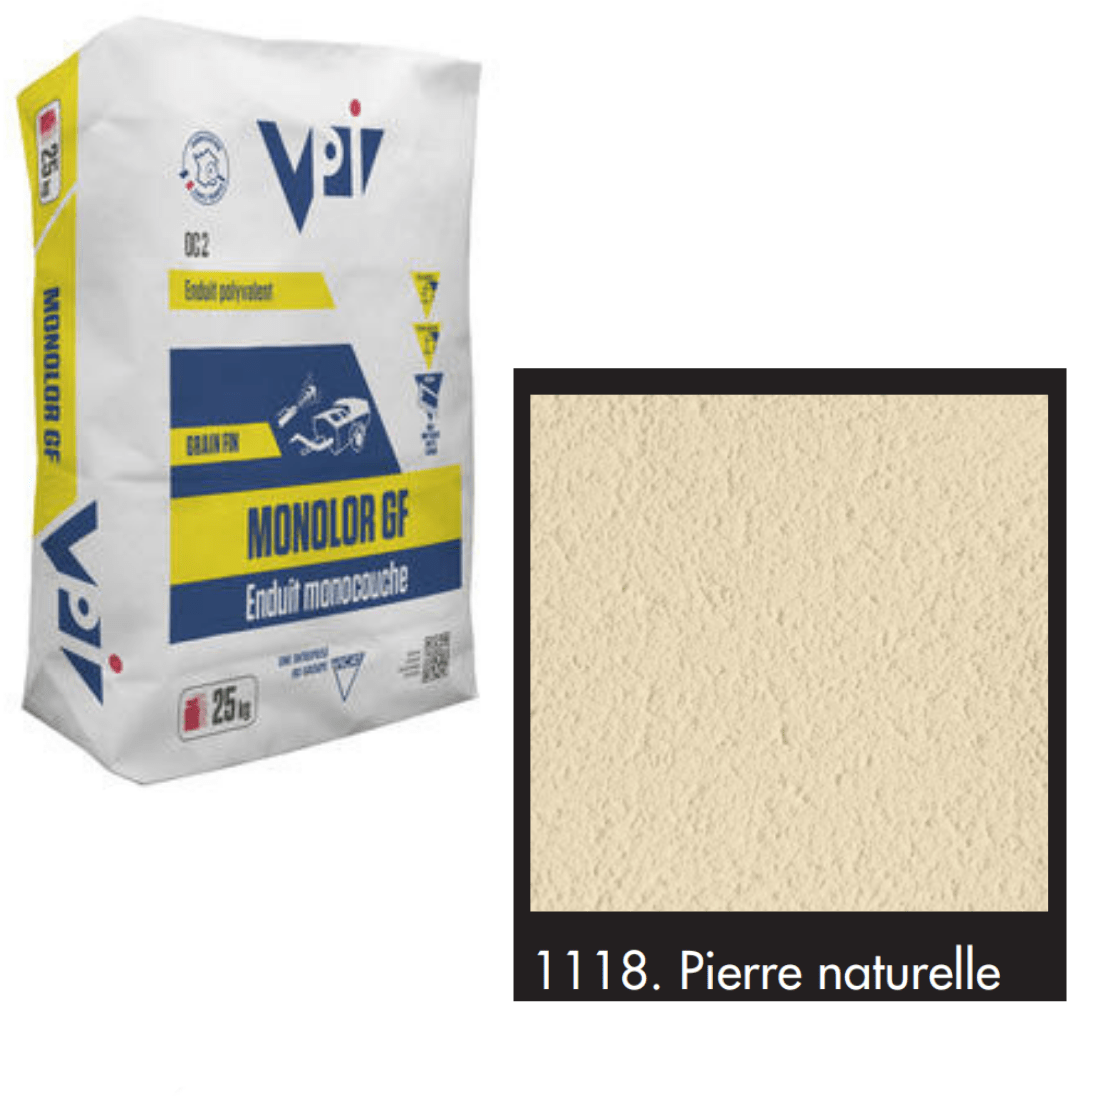 VPI Monocal GM1118 Pierre Naturelle 25kg - Builders Merchant Direct